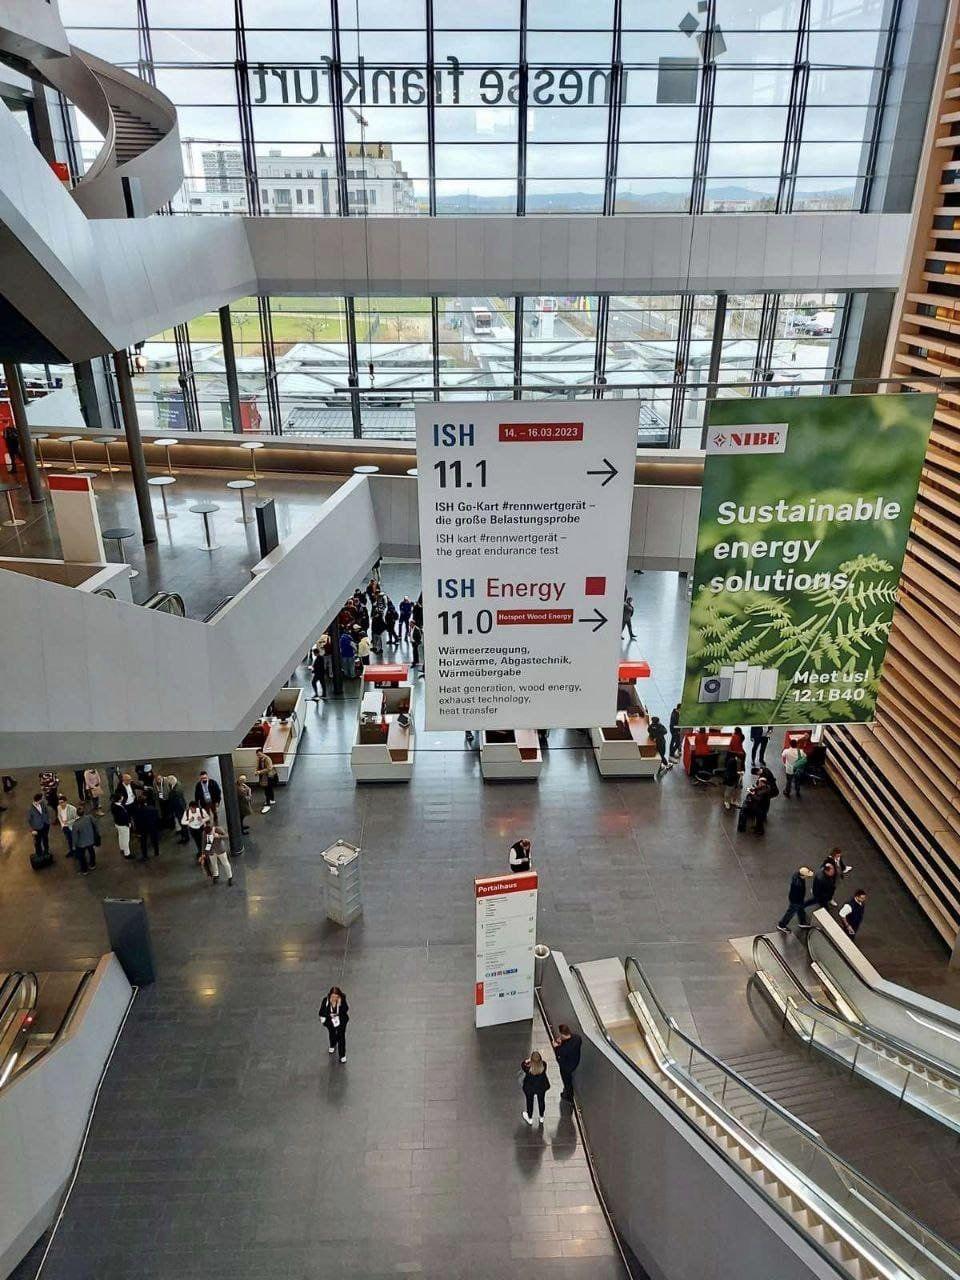 Продукцію вінницького заводу представили на світовій виставці у Франкфурті (Фото)